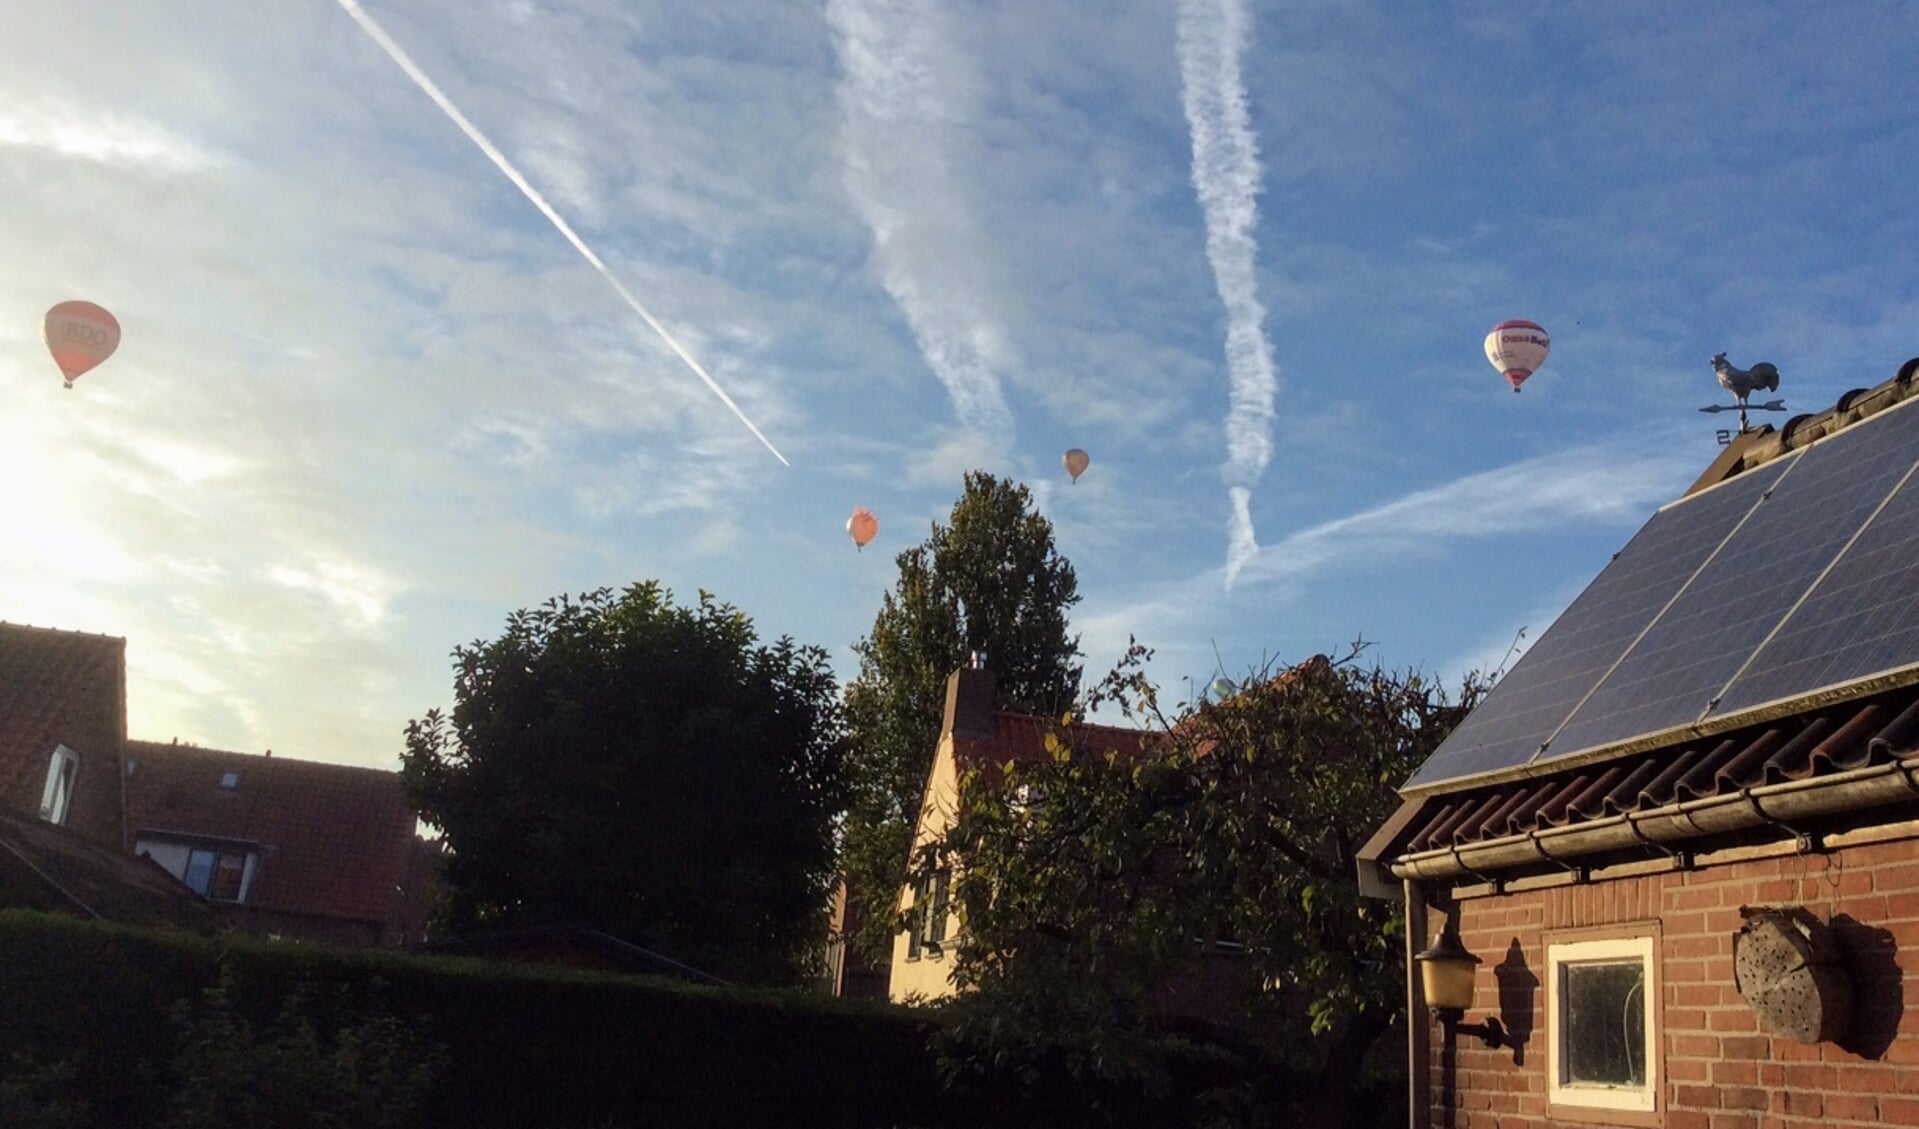 Kleurrijke heteluchtballonnen in de lucht boven Buren.